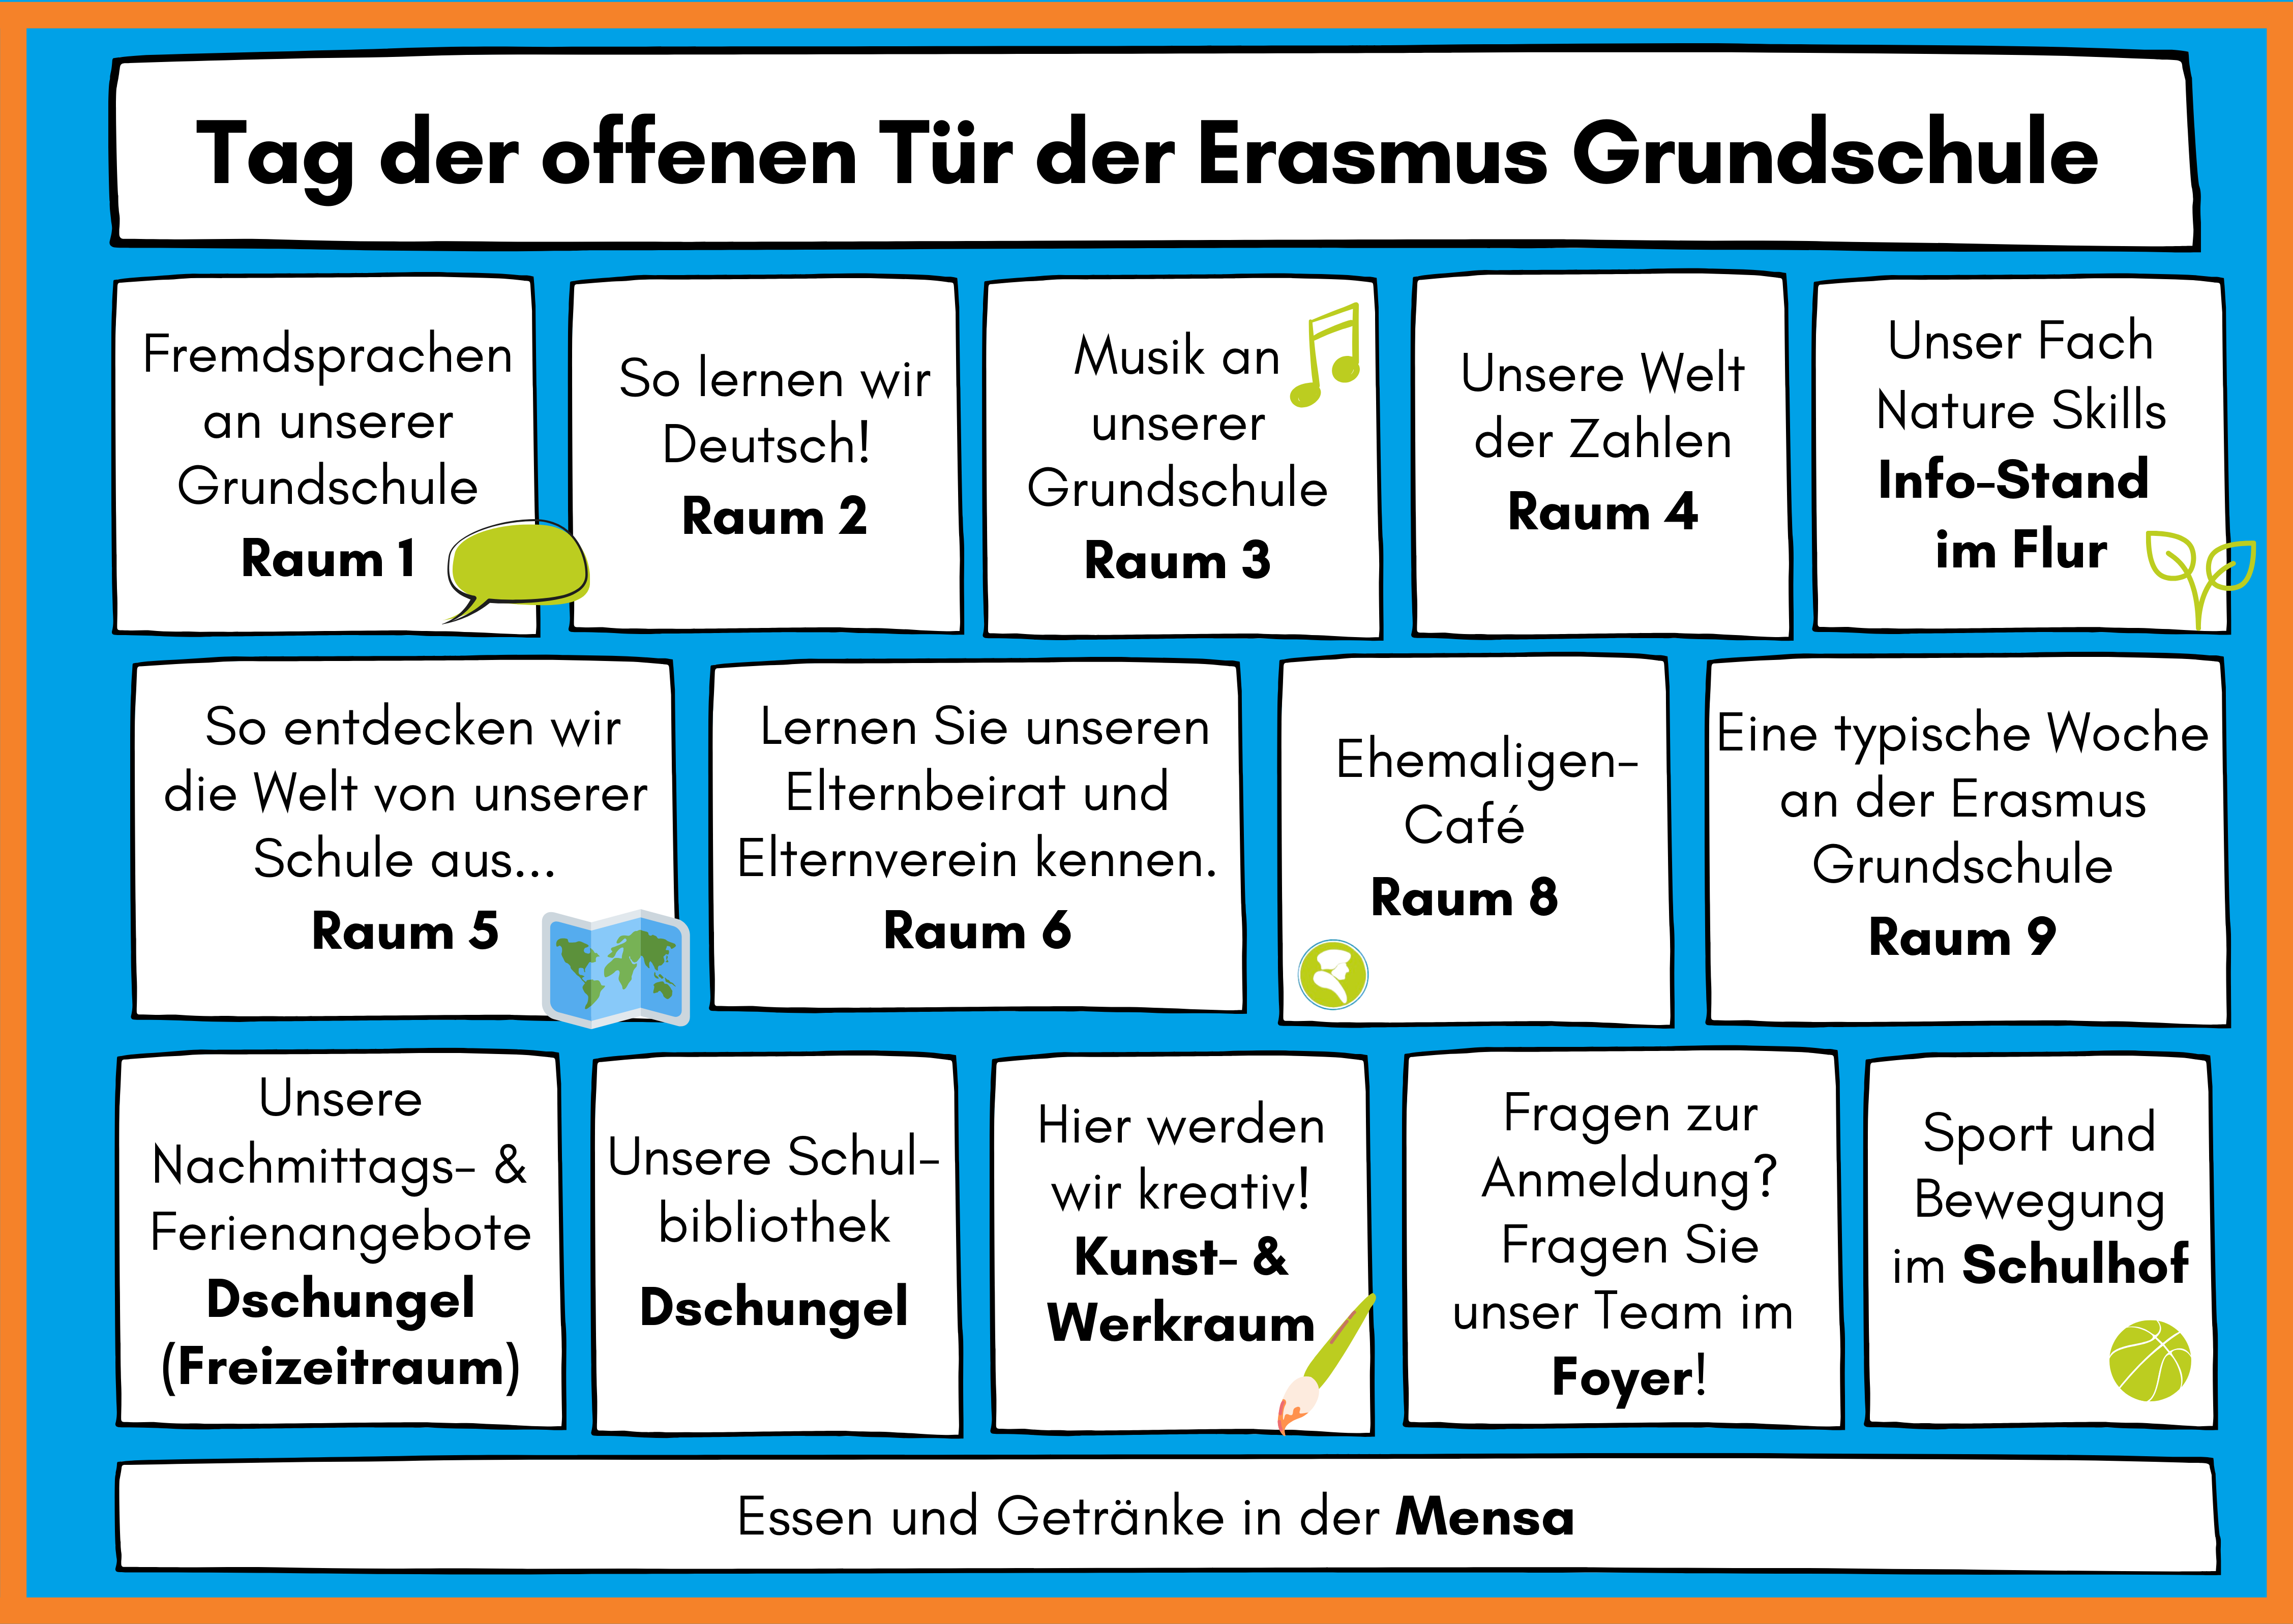 Tag der offenen TrProgramm Erasmus Grundschule